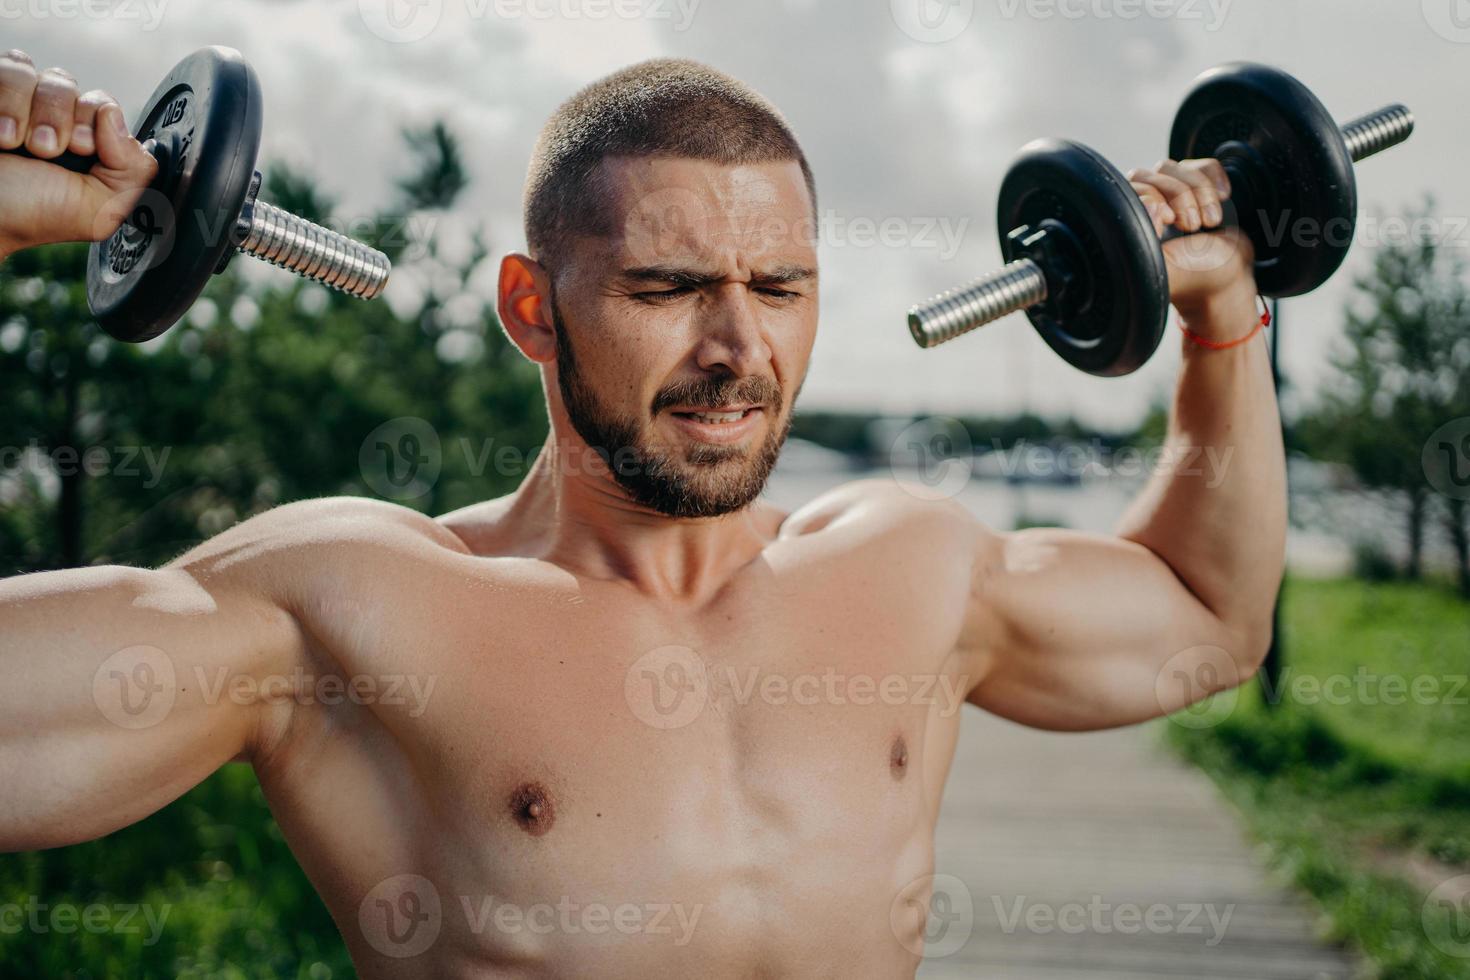 desportivo determinado musculoso homem europeu exercsisses com halteres, faz levantamento de peso ao ar livre, tem torso nu, treina músculos, quer ter corpo atlético. conceito de força e motivação. foto